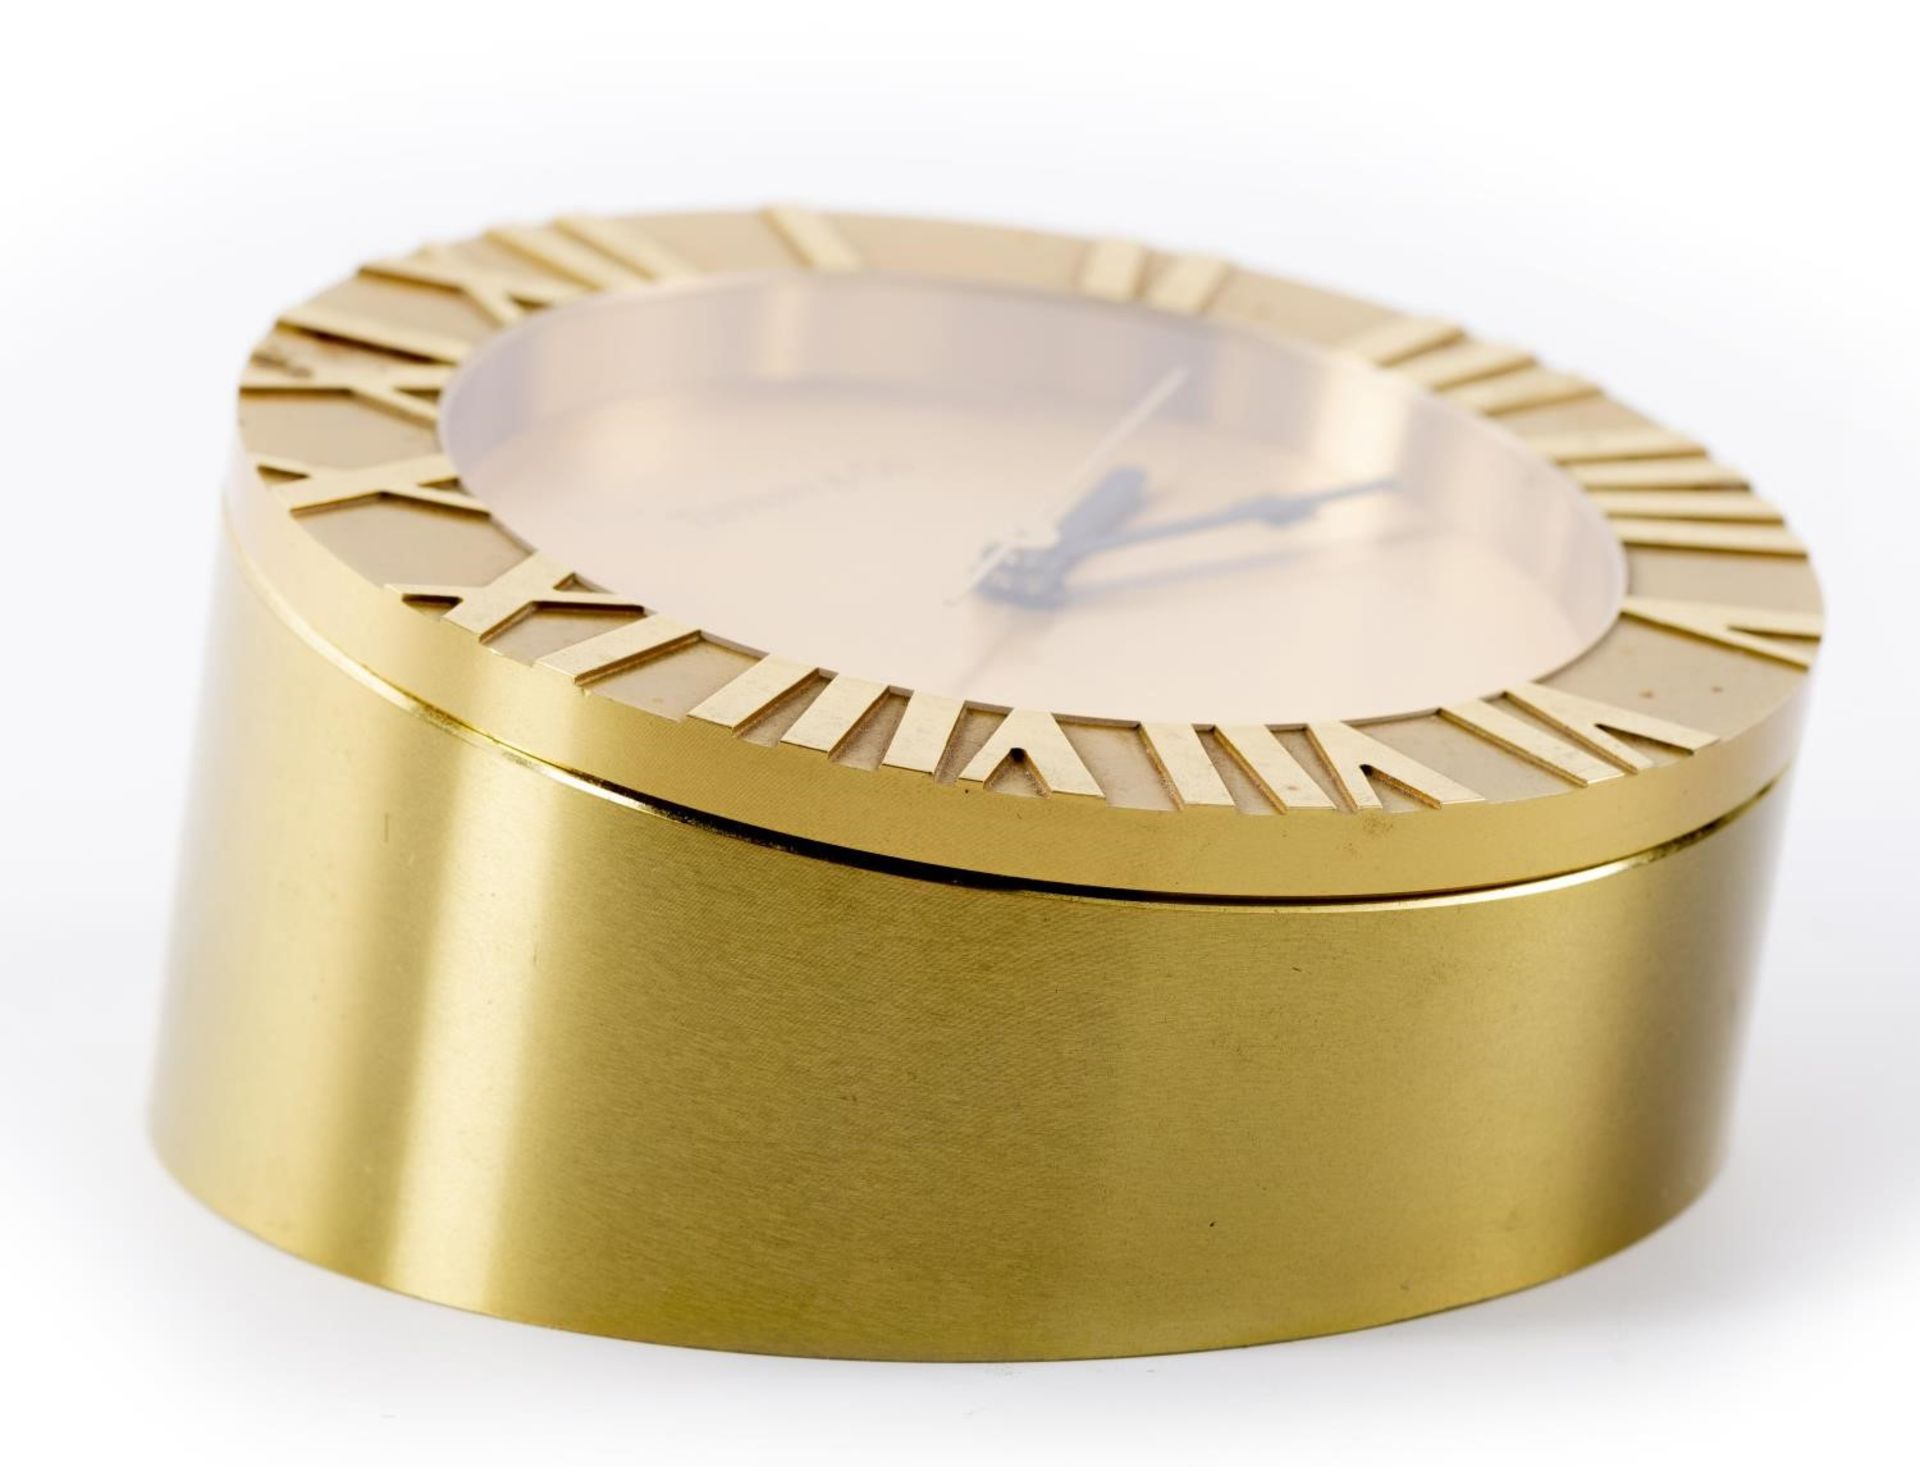 Tiffany & Co, pendulette en métal doré, mvt quartz, guichet de date à 3h, lunette [...] - Bild 4 aus 6